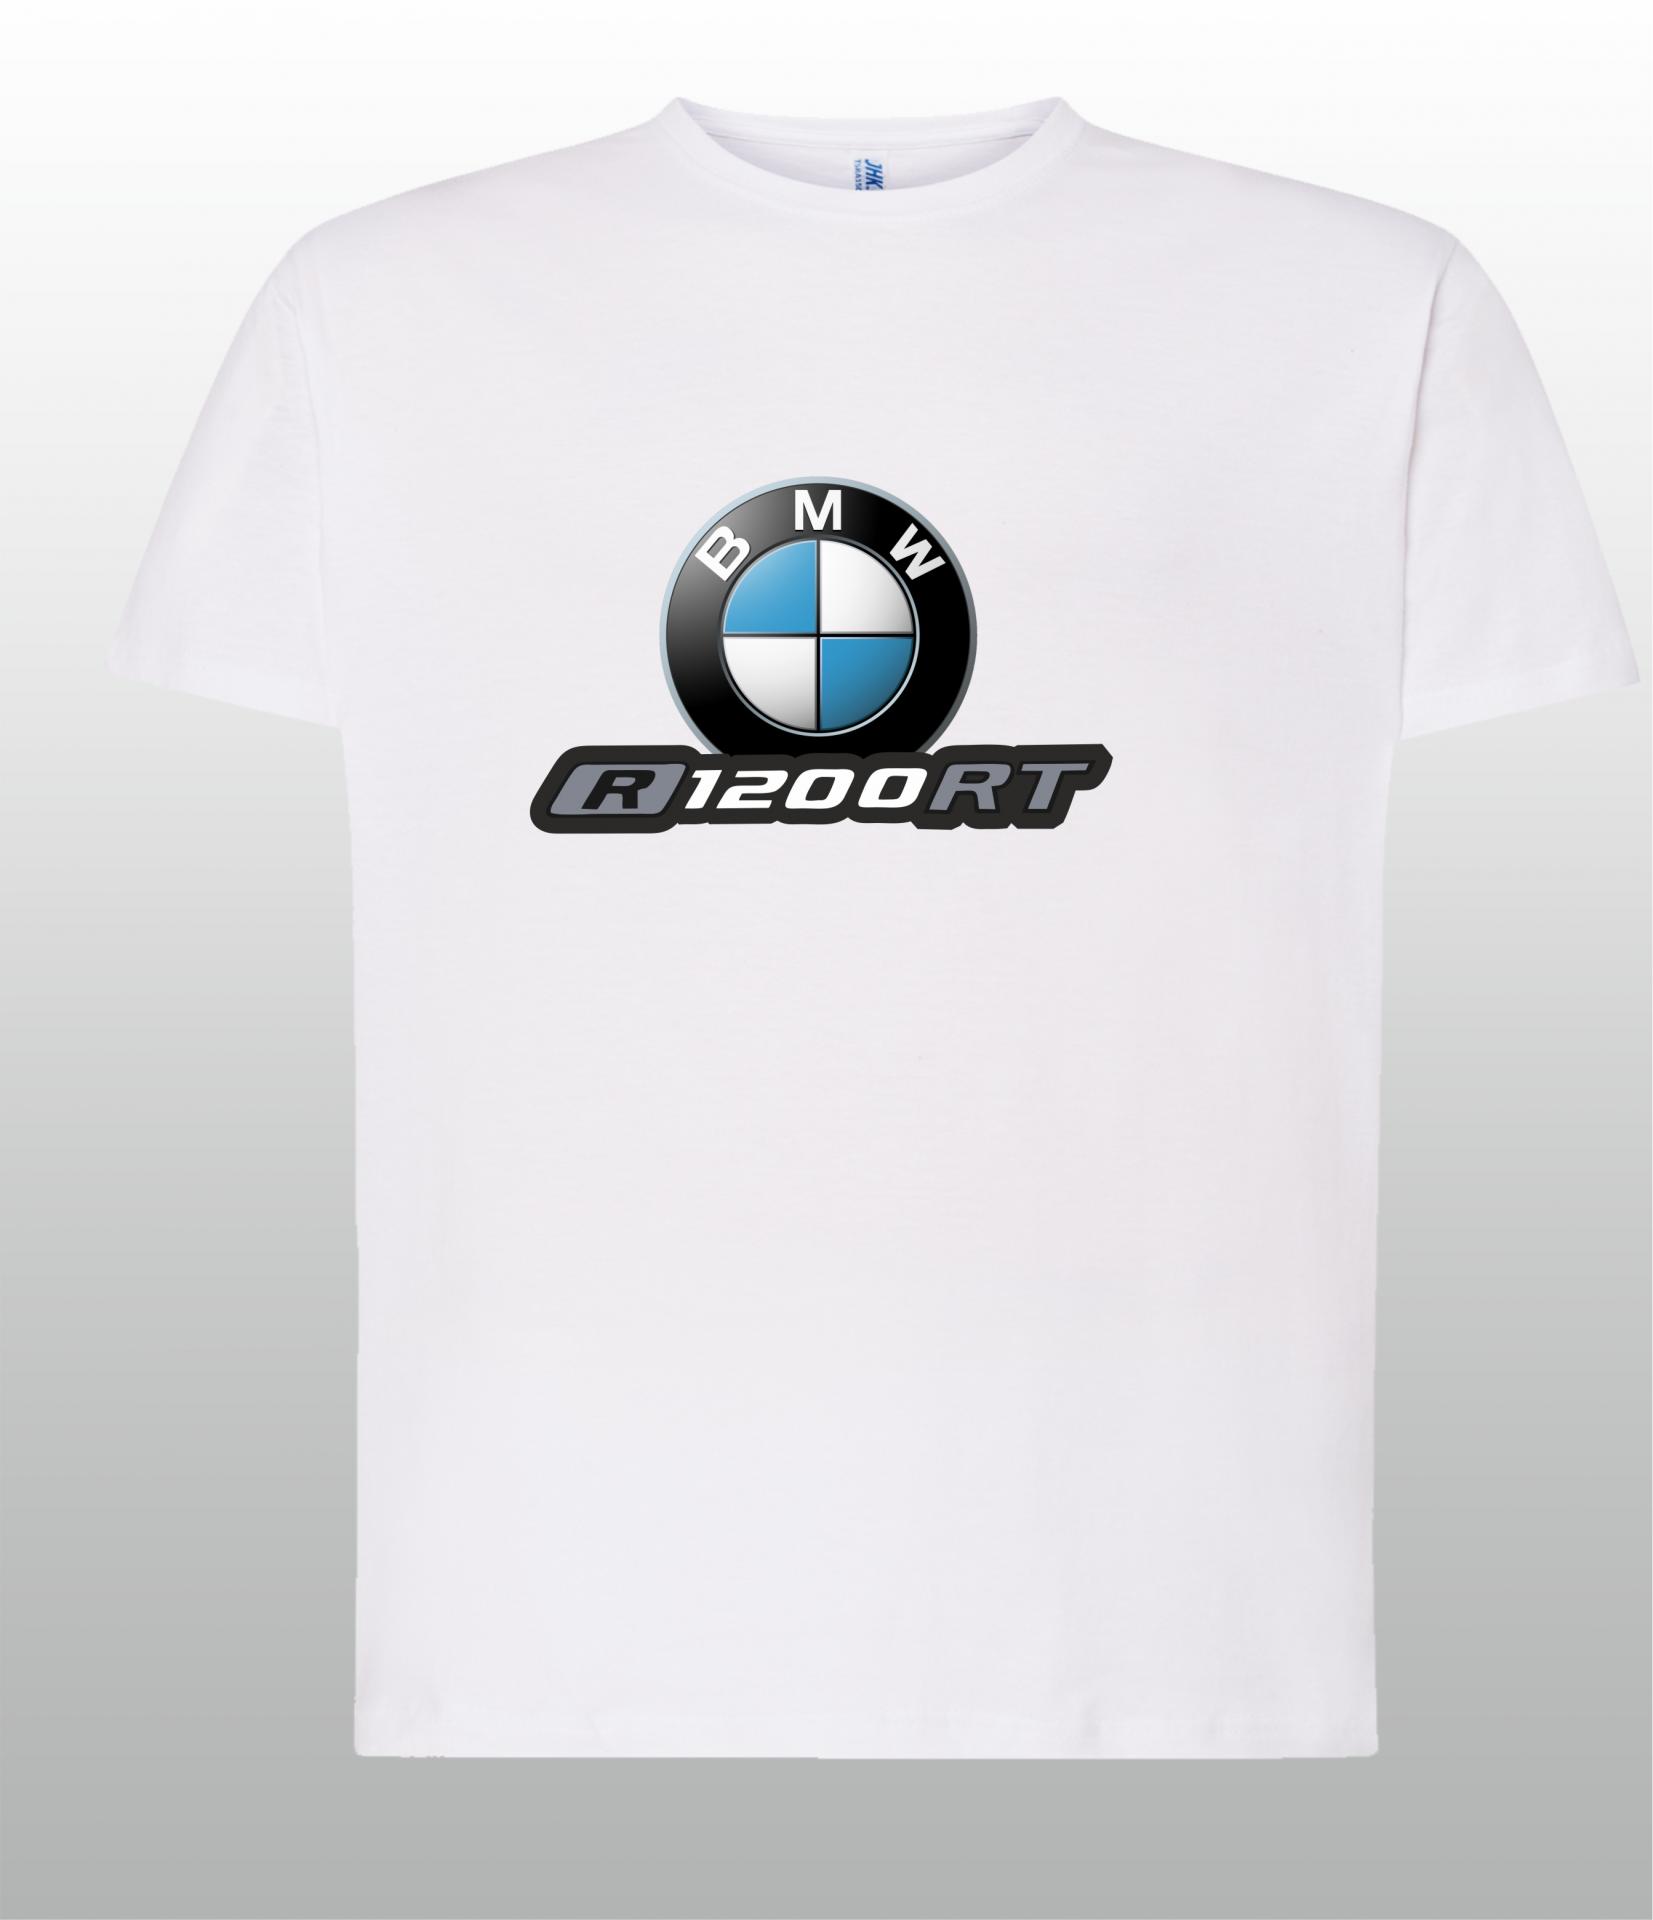 Comprar Camiseta BMW Motorsport Logo Blanco. Disponible en azul, hombre